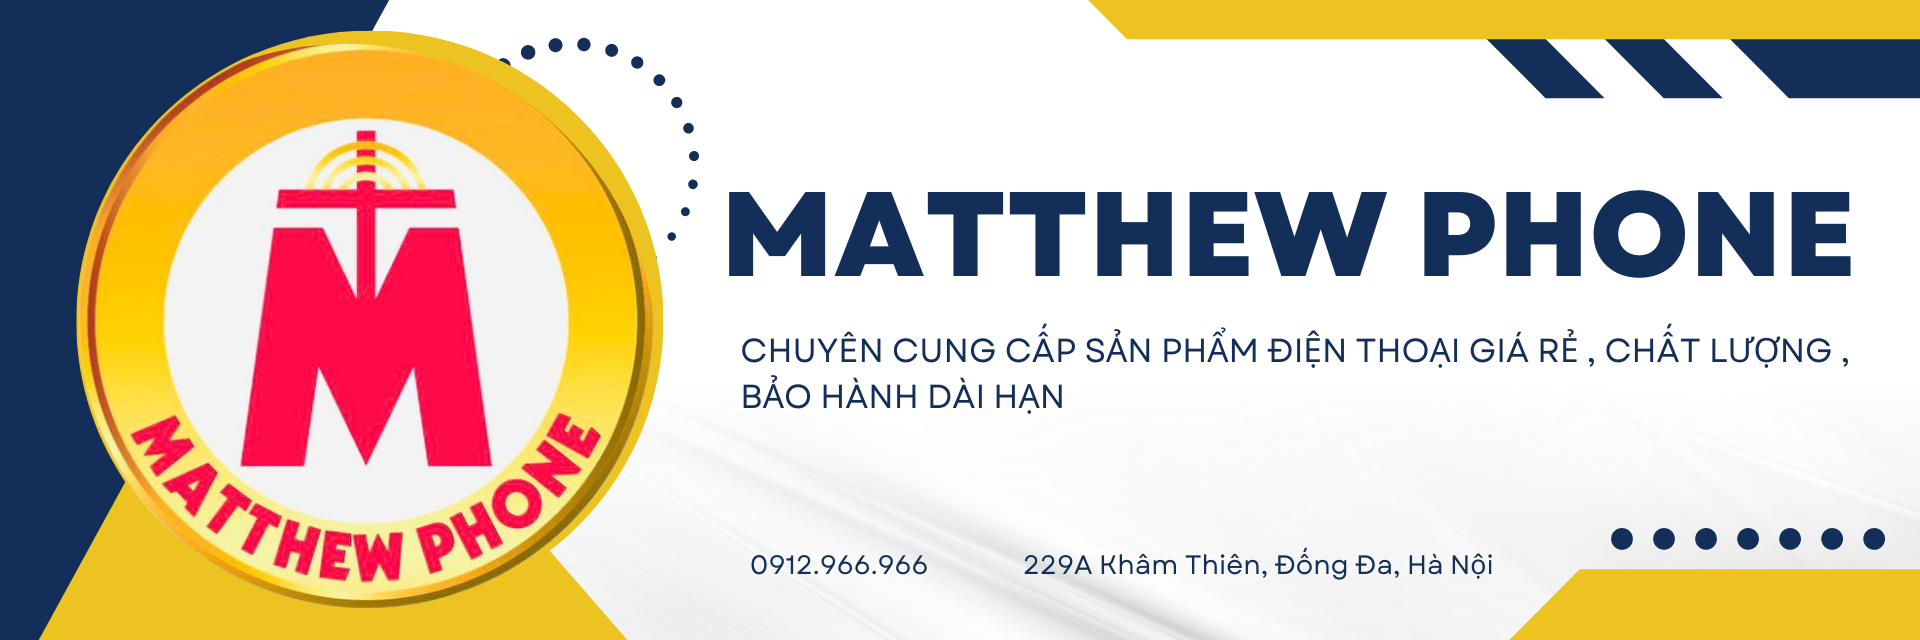 Matthew Phone